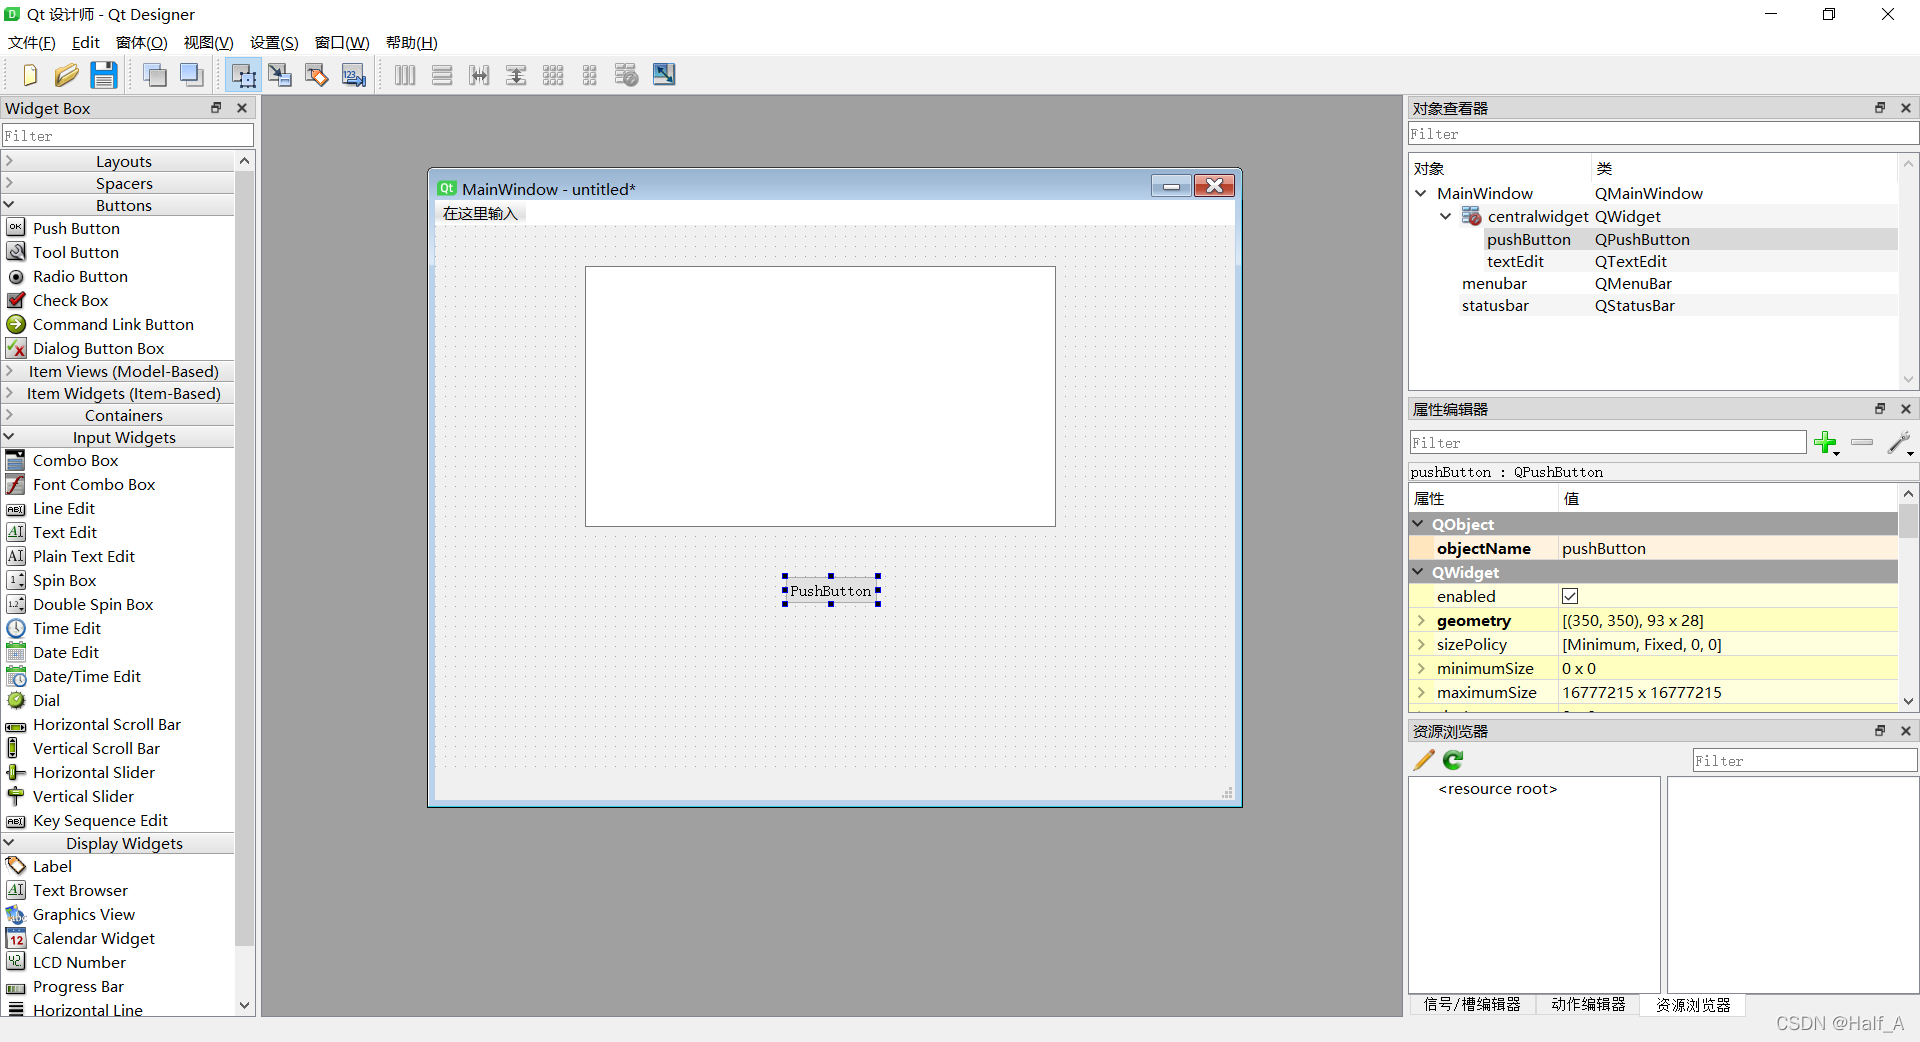 PyQt5图形界面GUI开发过程记录